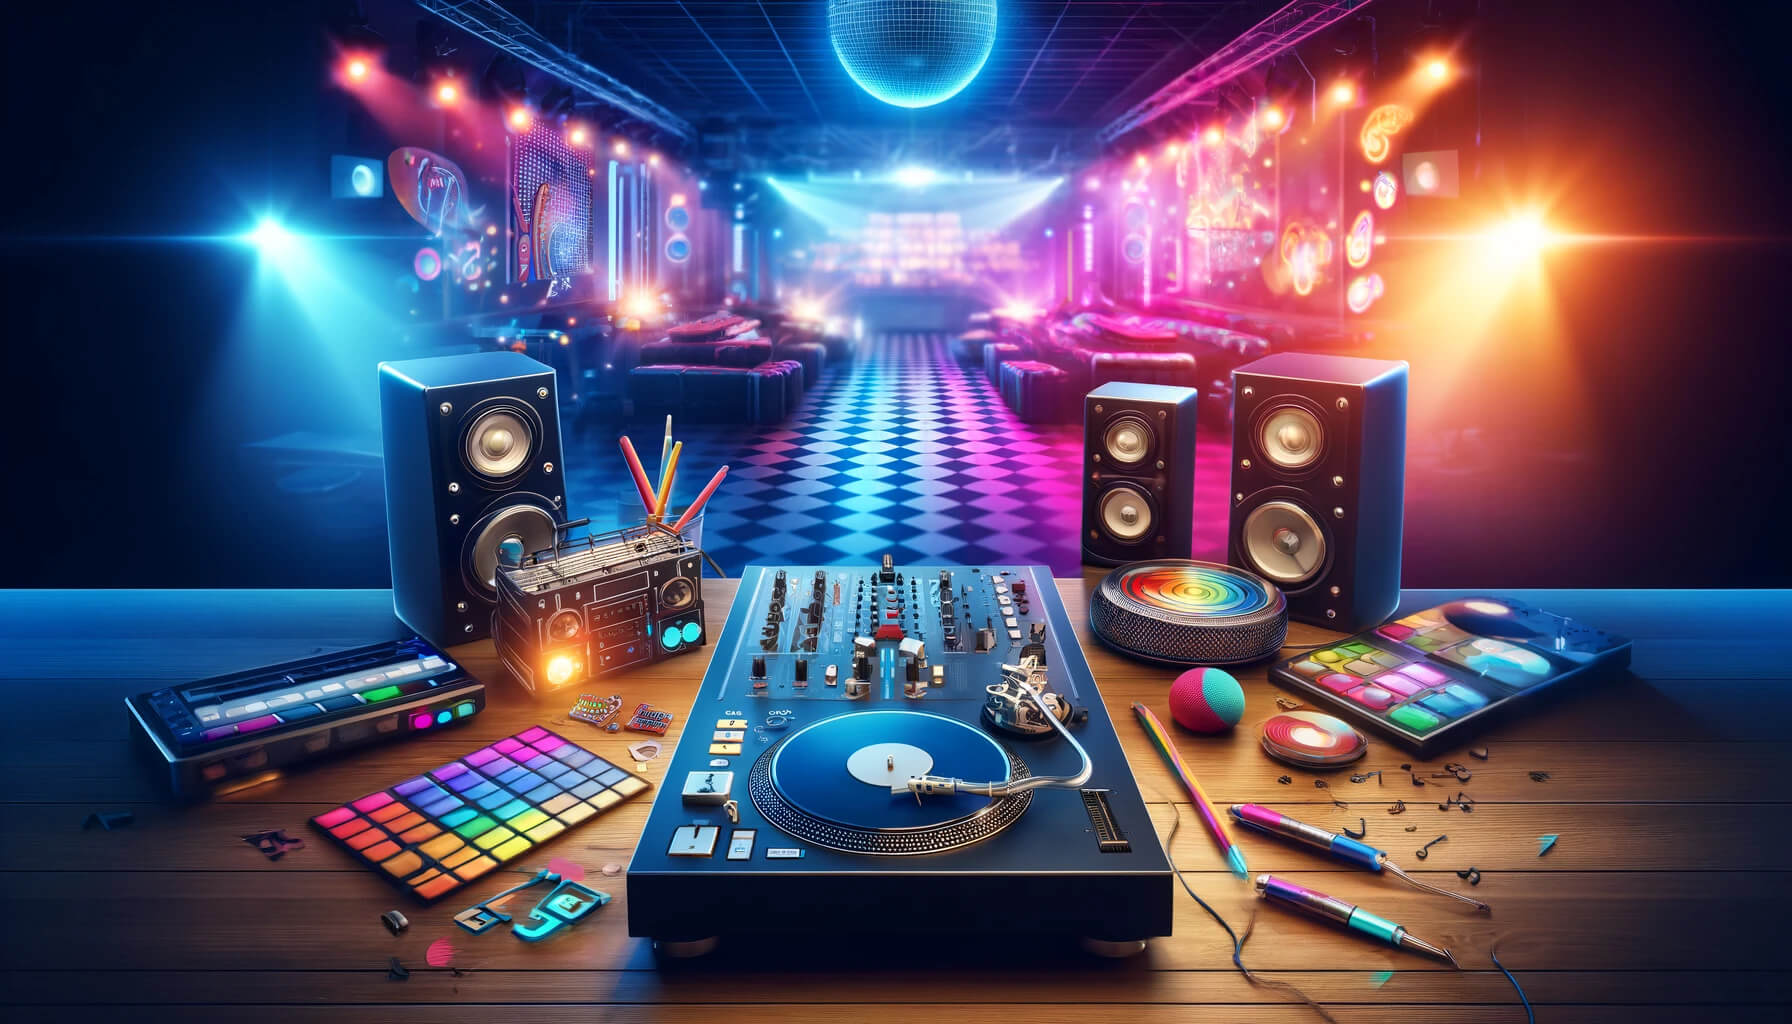 Gece Kulübü Kültürü ve DJ'lerin Rolü